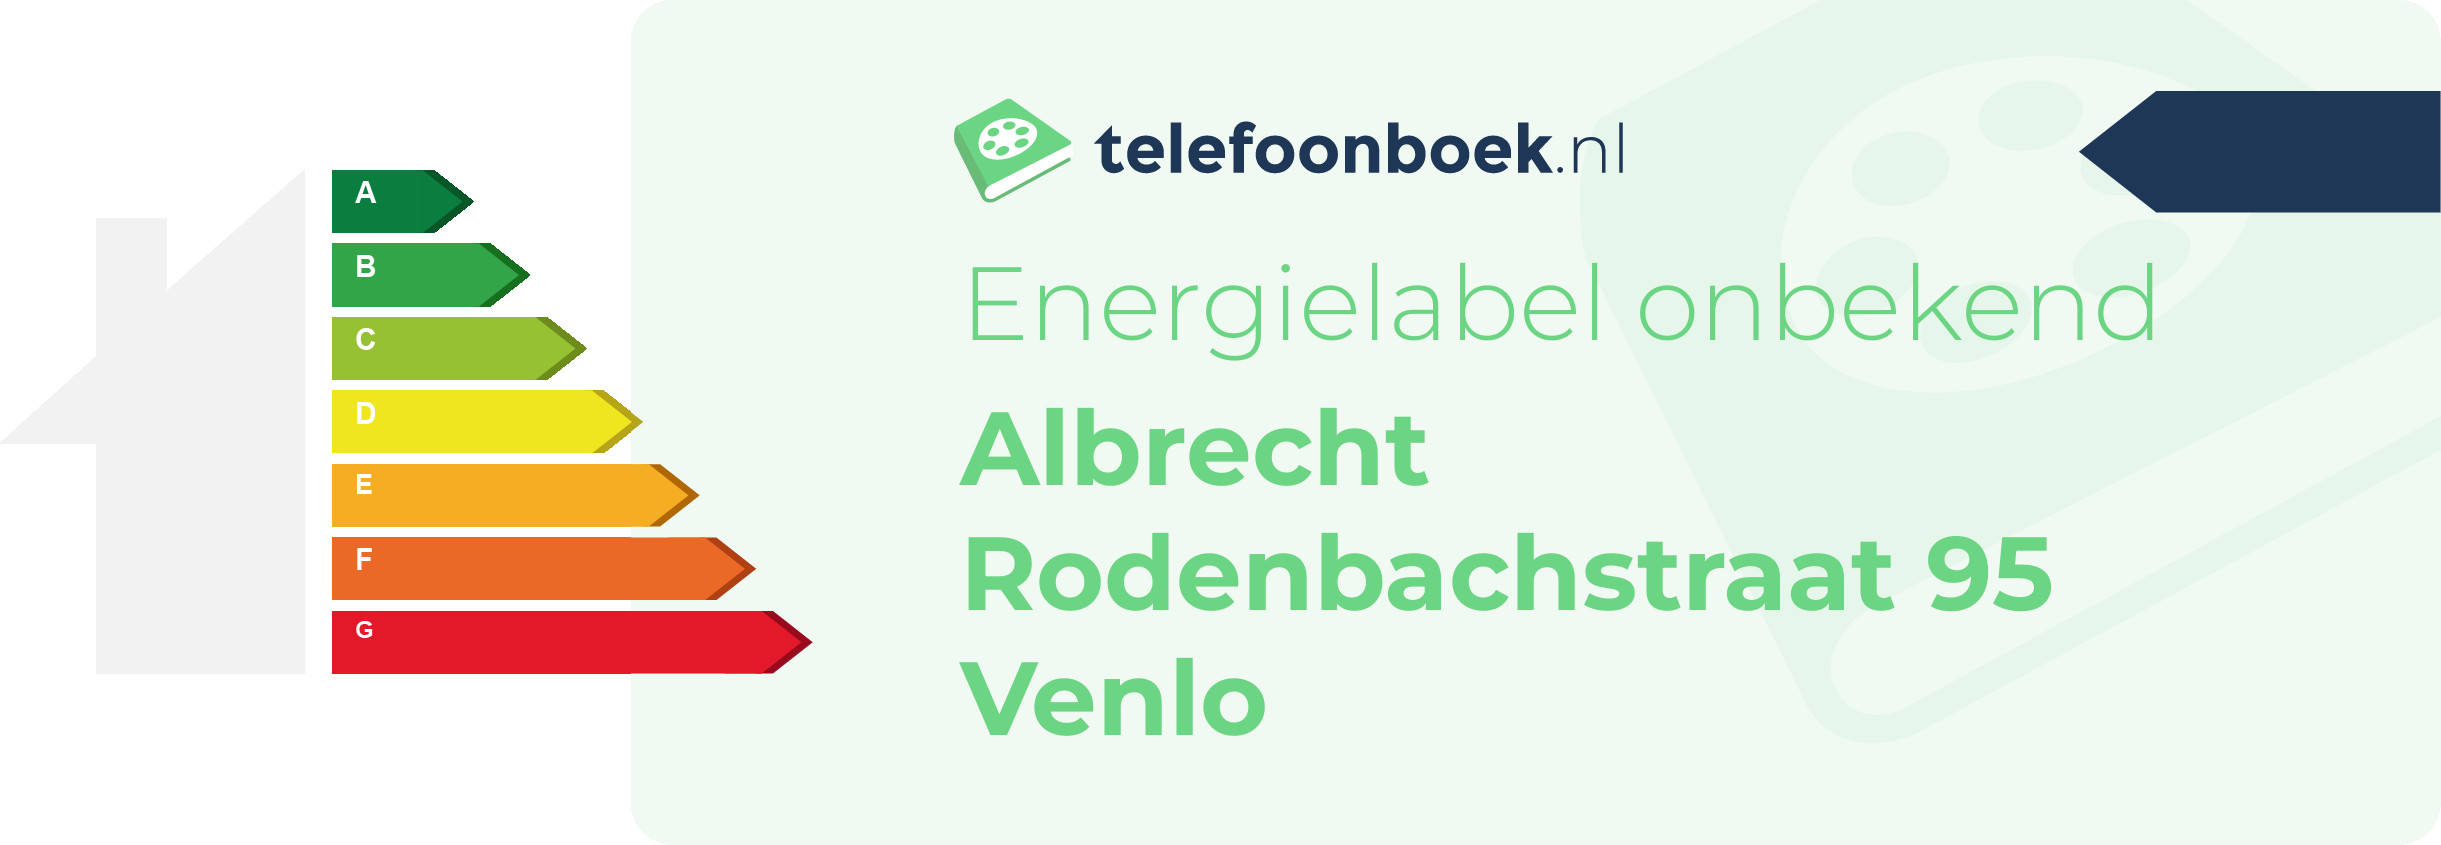 Energielabel Albrecht Rodenbachstraat 95 Venlo